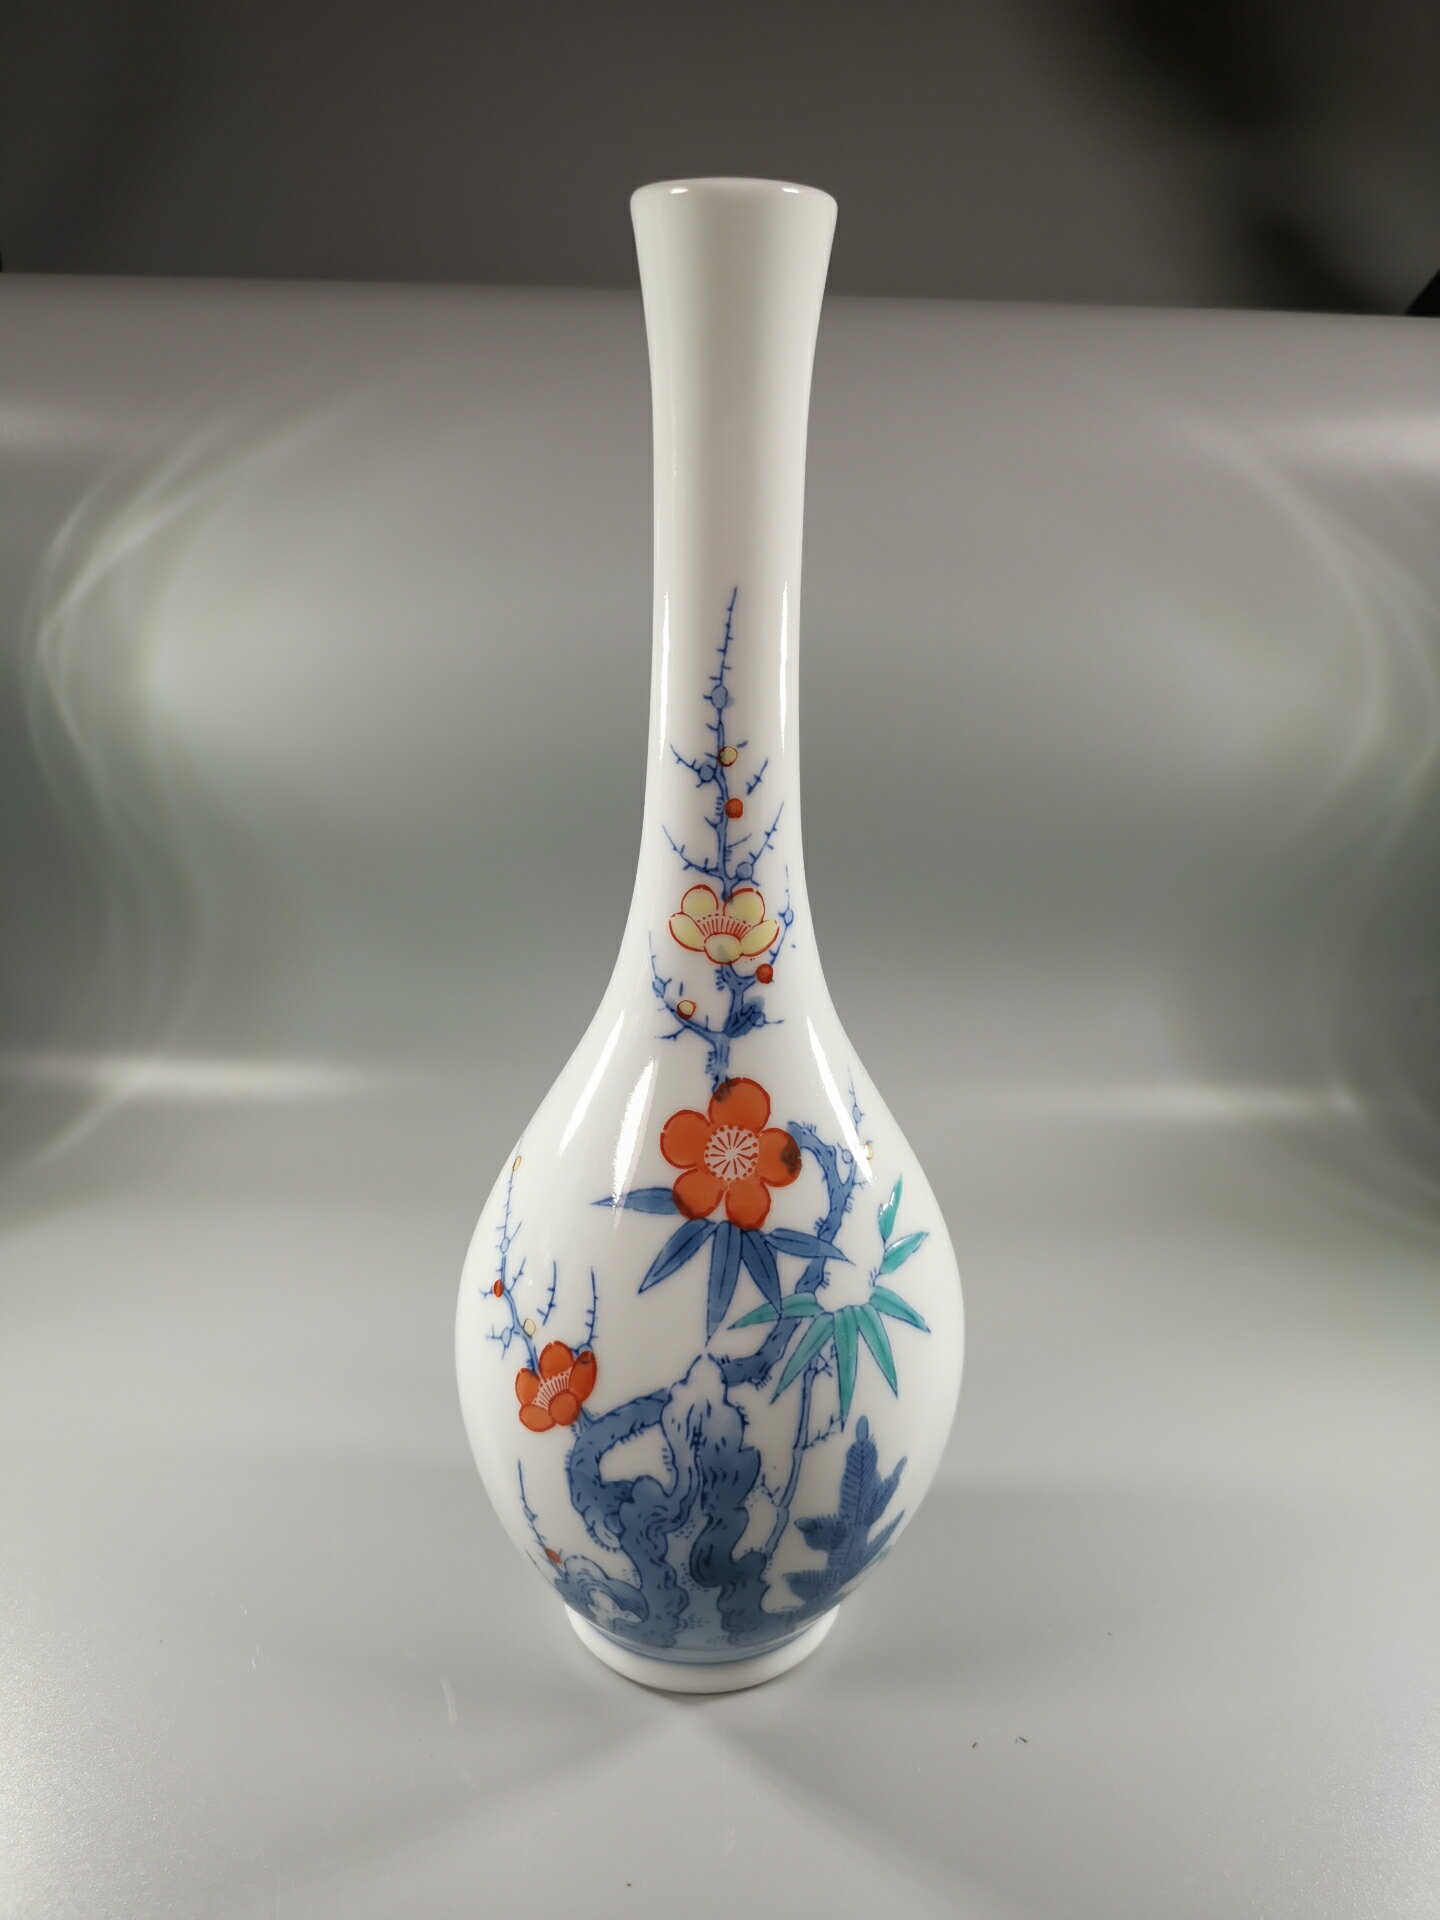 日本 有田燒 禾泉作 觀音瓶 花瓶，釉上彩繪花草畫篇，白底釉